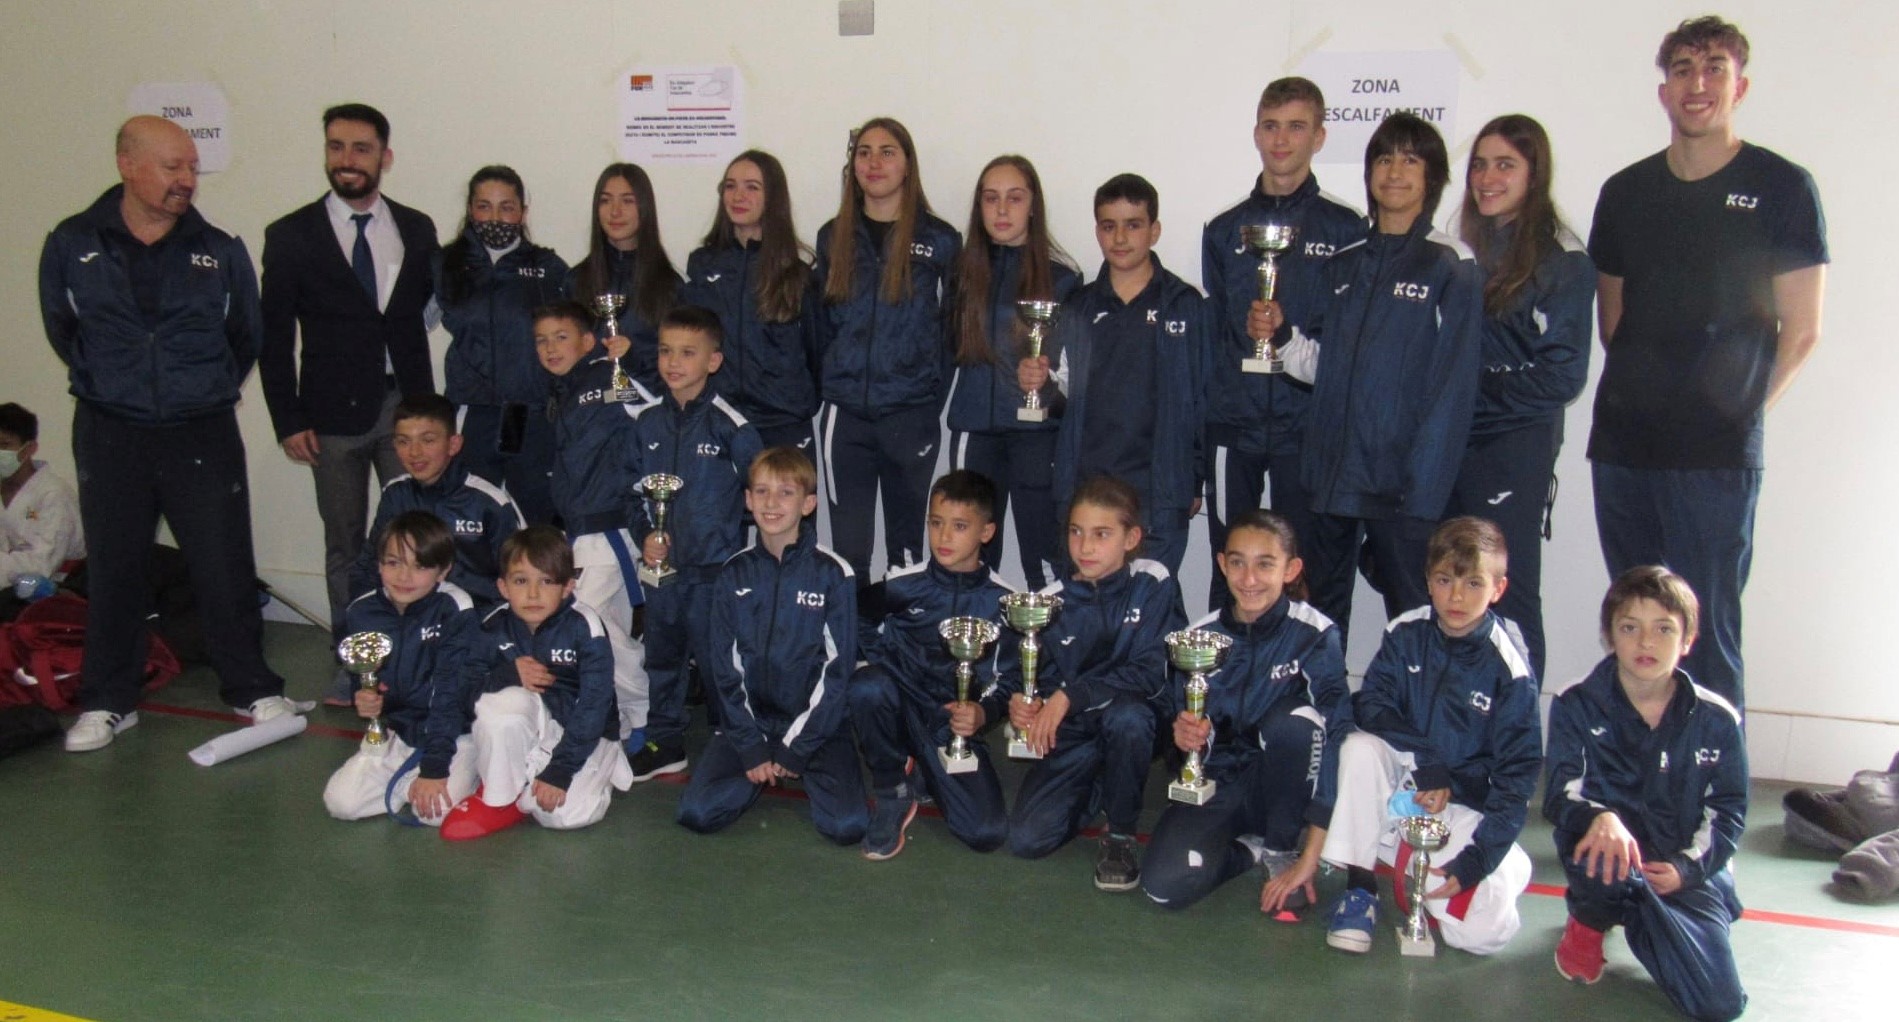 Ajuntament de Sant Celoni - El Karate Club Just de Sant Celoni s